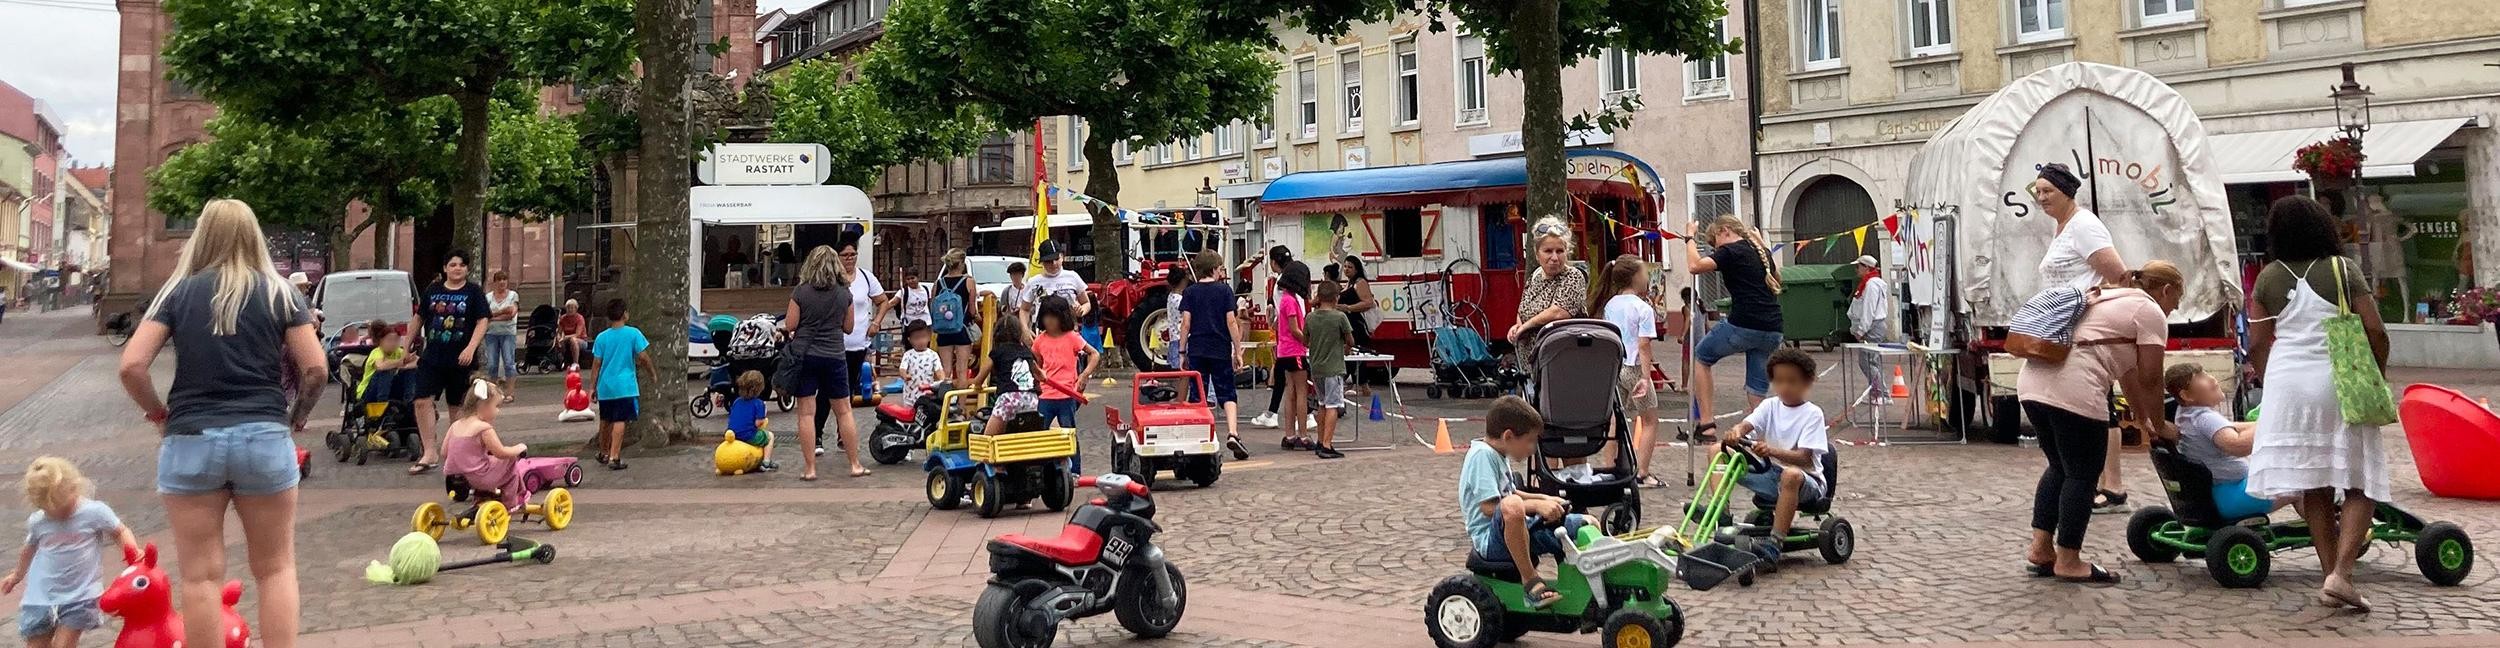 Children play on the market square in Rastatt